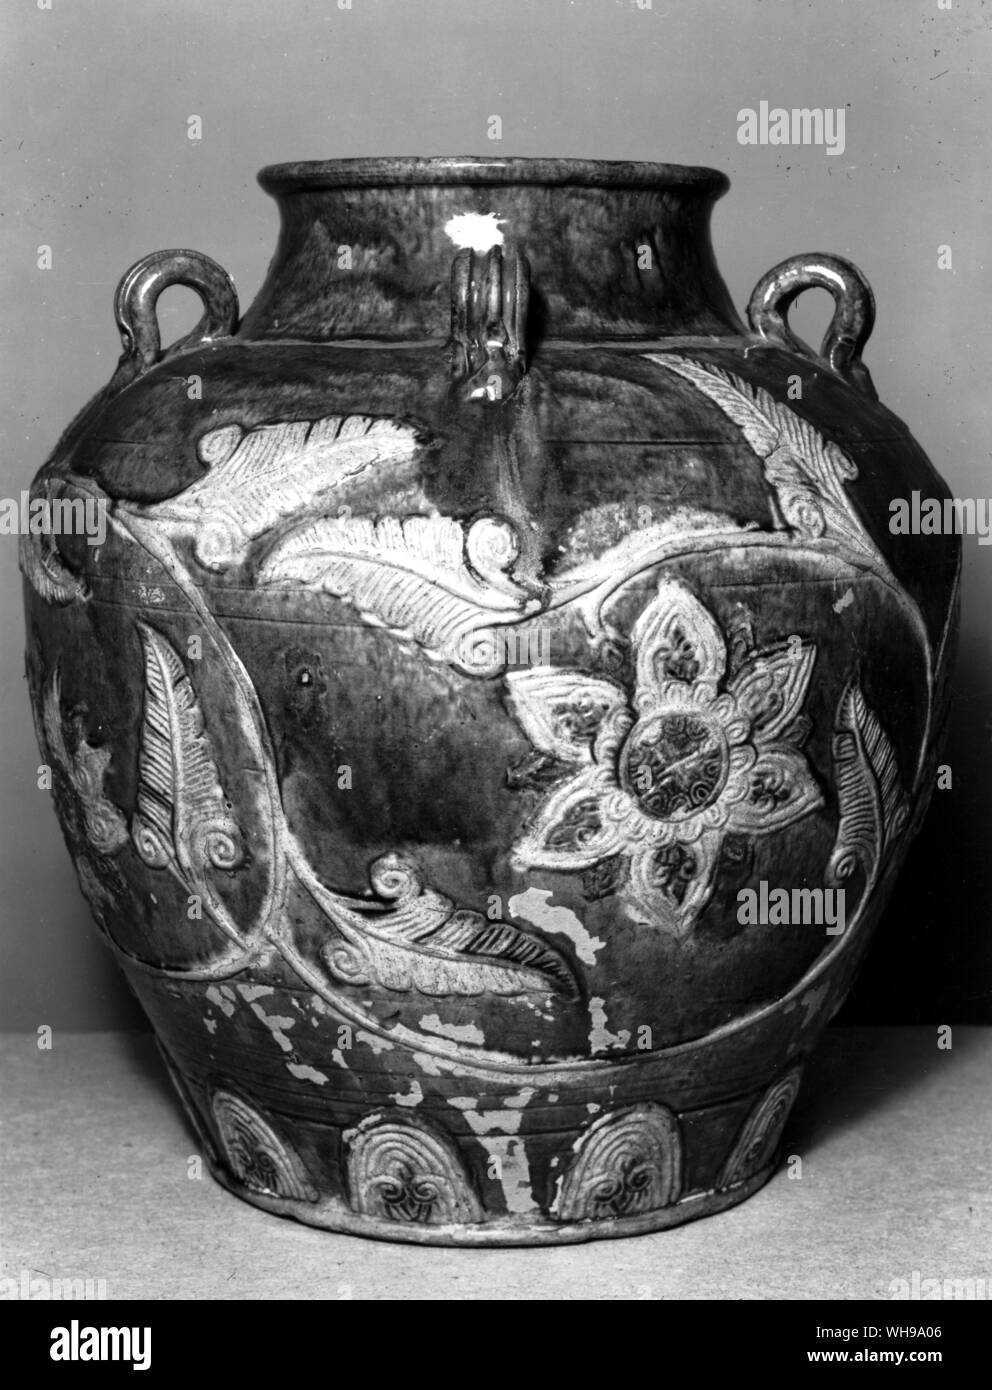 Le jar Tradescant. Un artabani «' jar (du sud de la Chine) mentionné dans l'inventaire de 1661 Tradescant. Ces conteneurs étaient simplement, d'un type fait peut-être de 500 ans. Banque D'Images